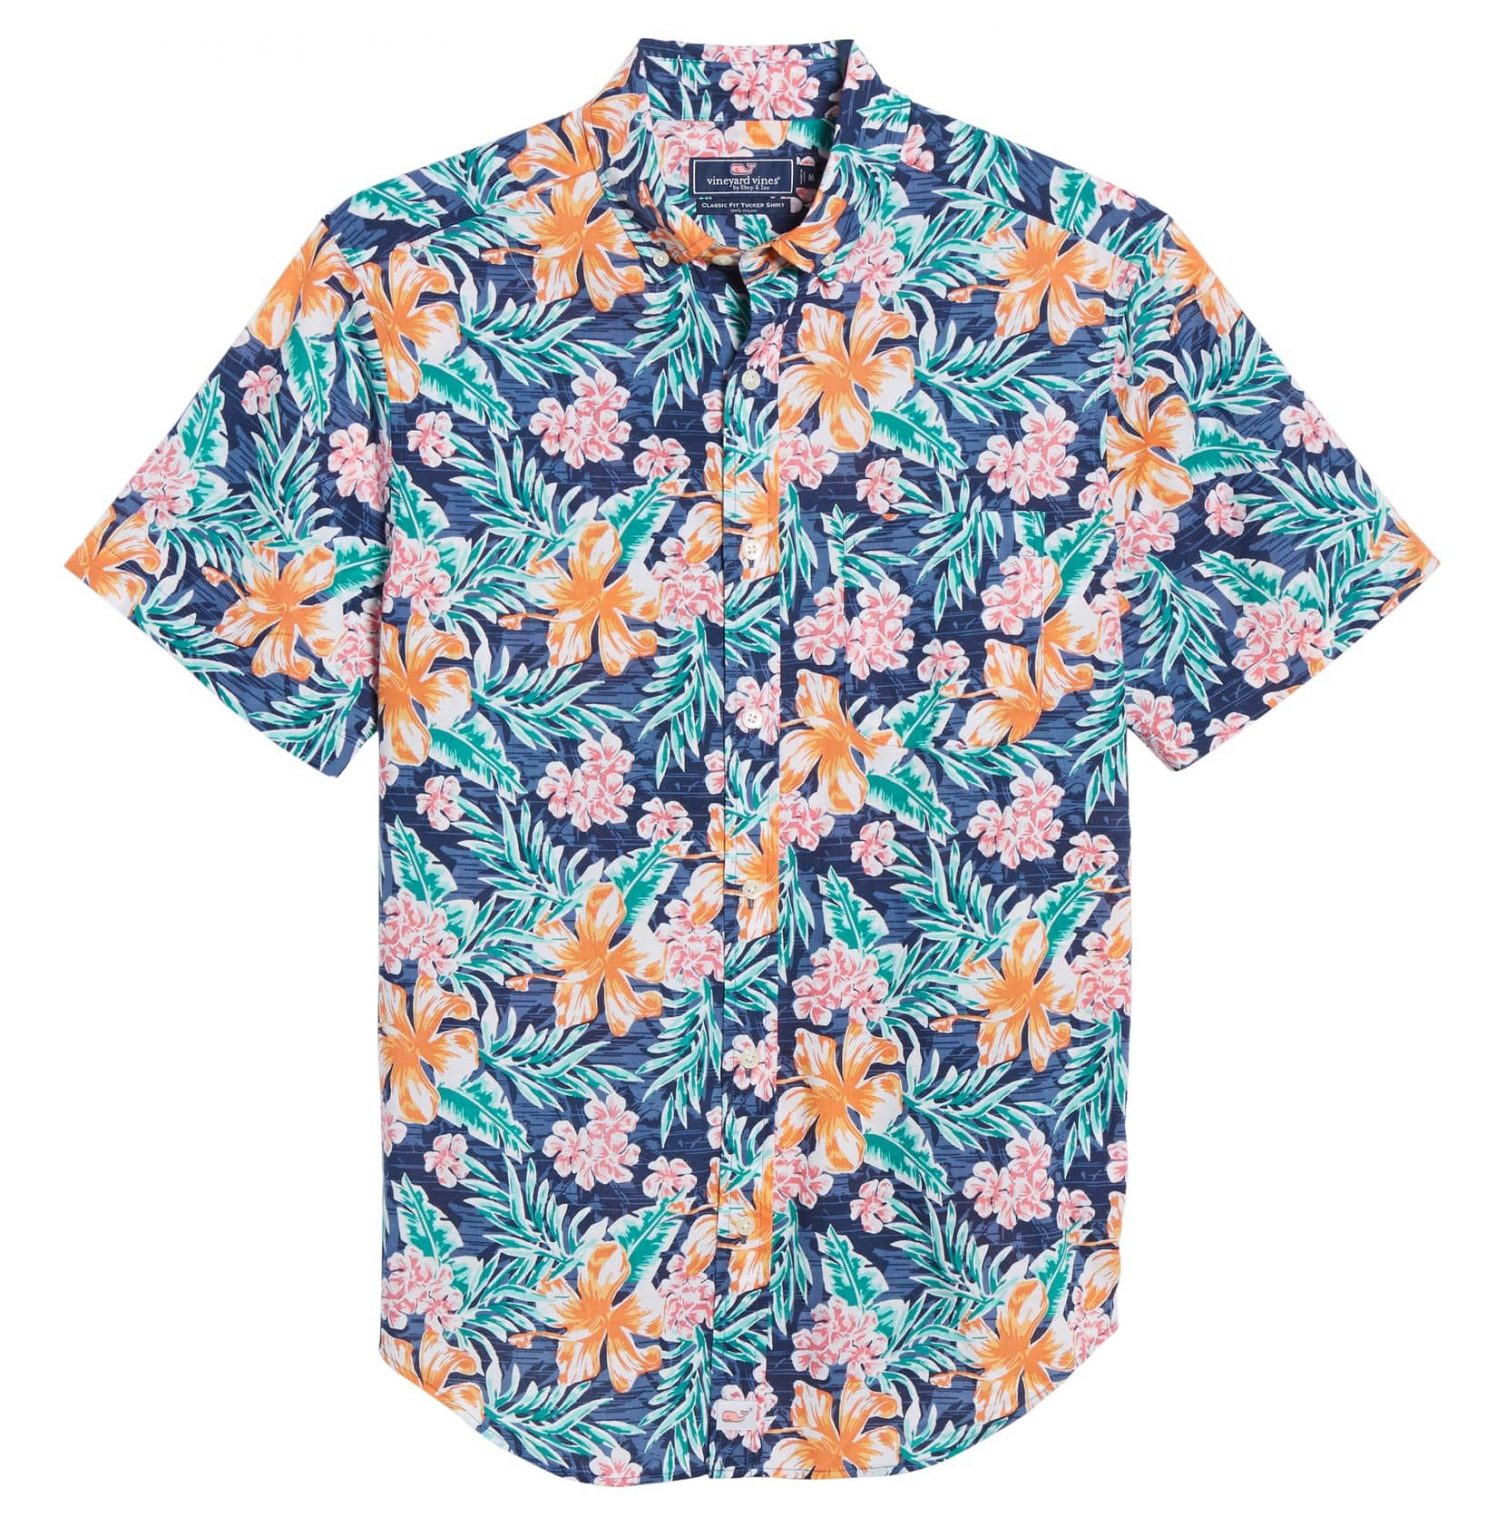 Vineyard Vines Hawaiian Shirt E1552831132233 - Pick A Quilt